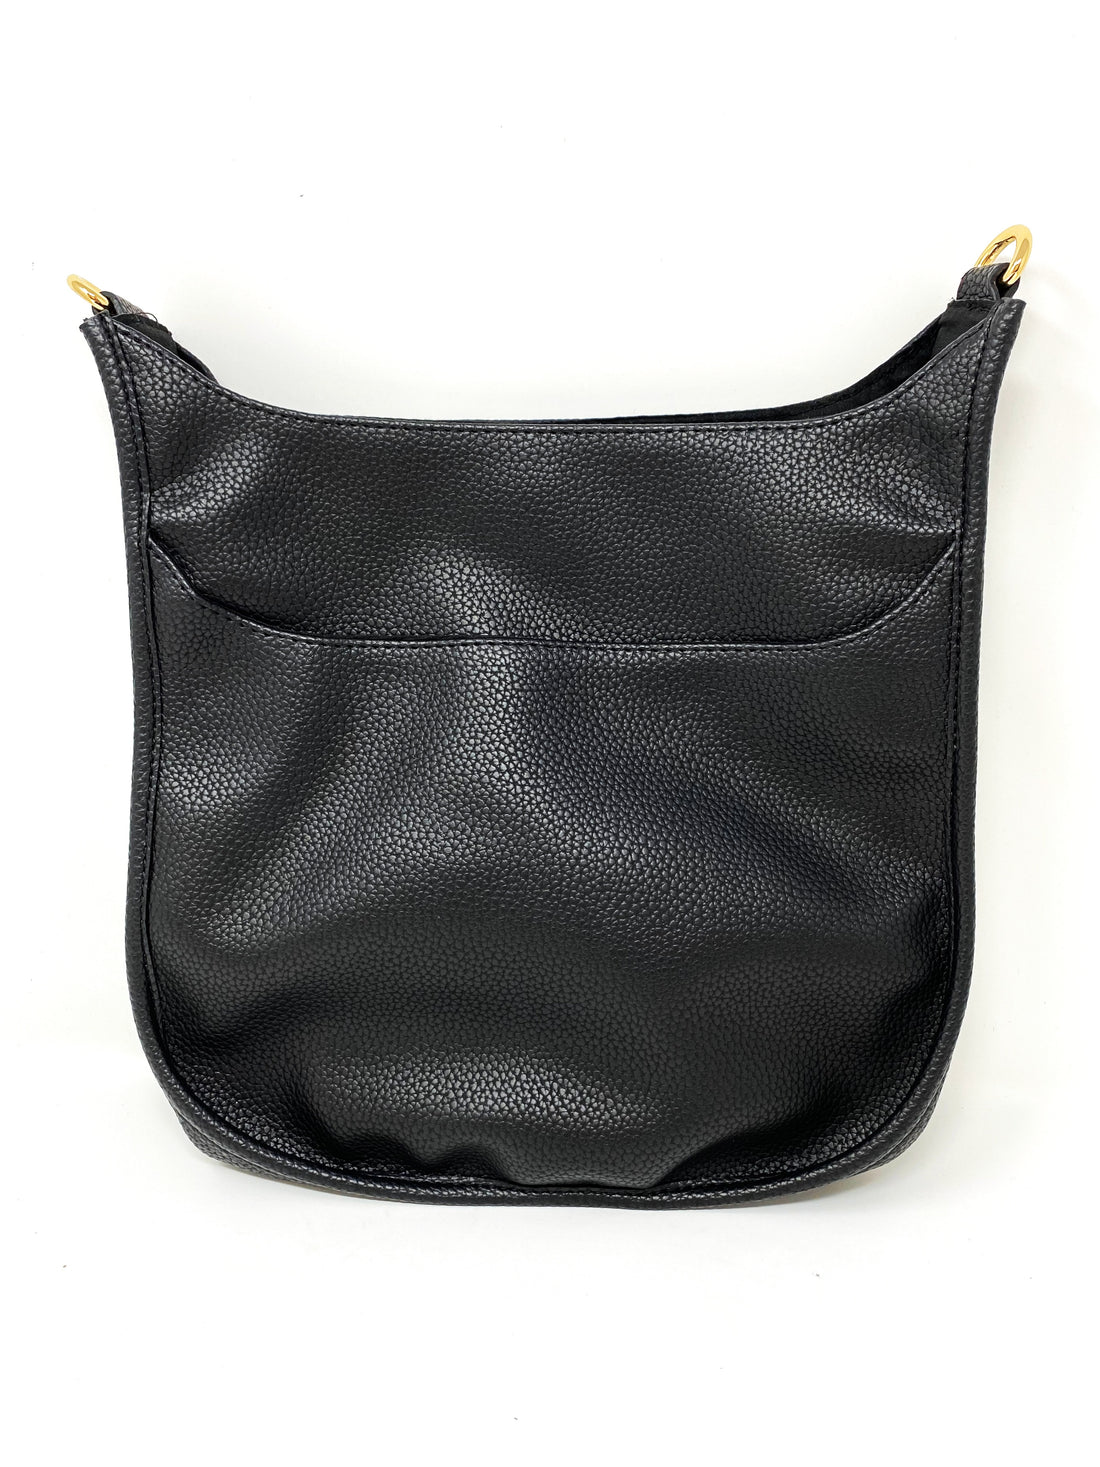 Saddle Bag in Vegan Leather in Black